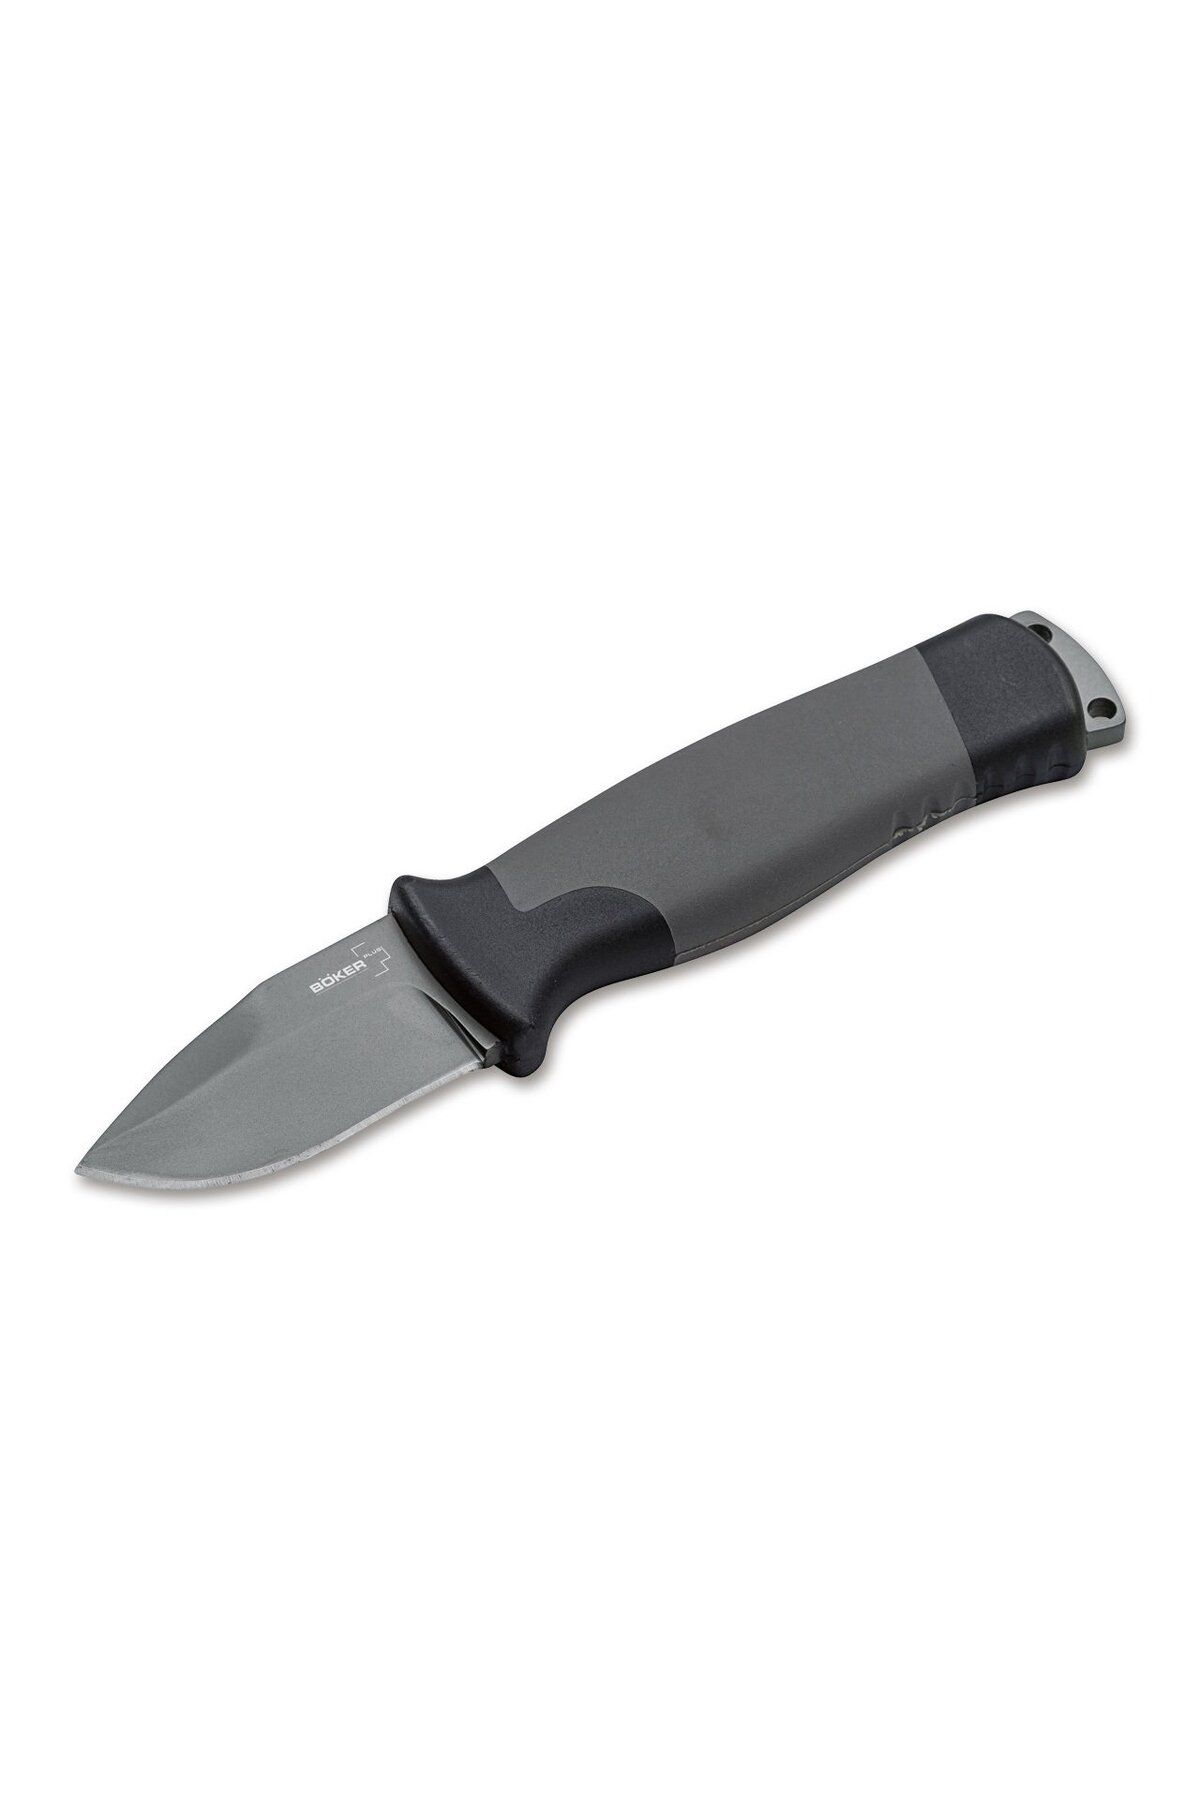 Böker Plus Outdoorsman Mini Bıçak